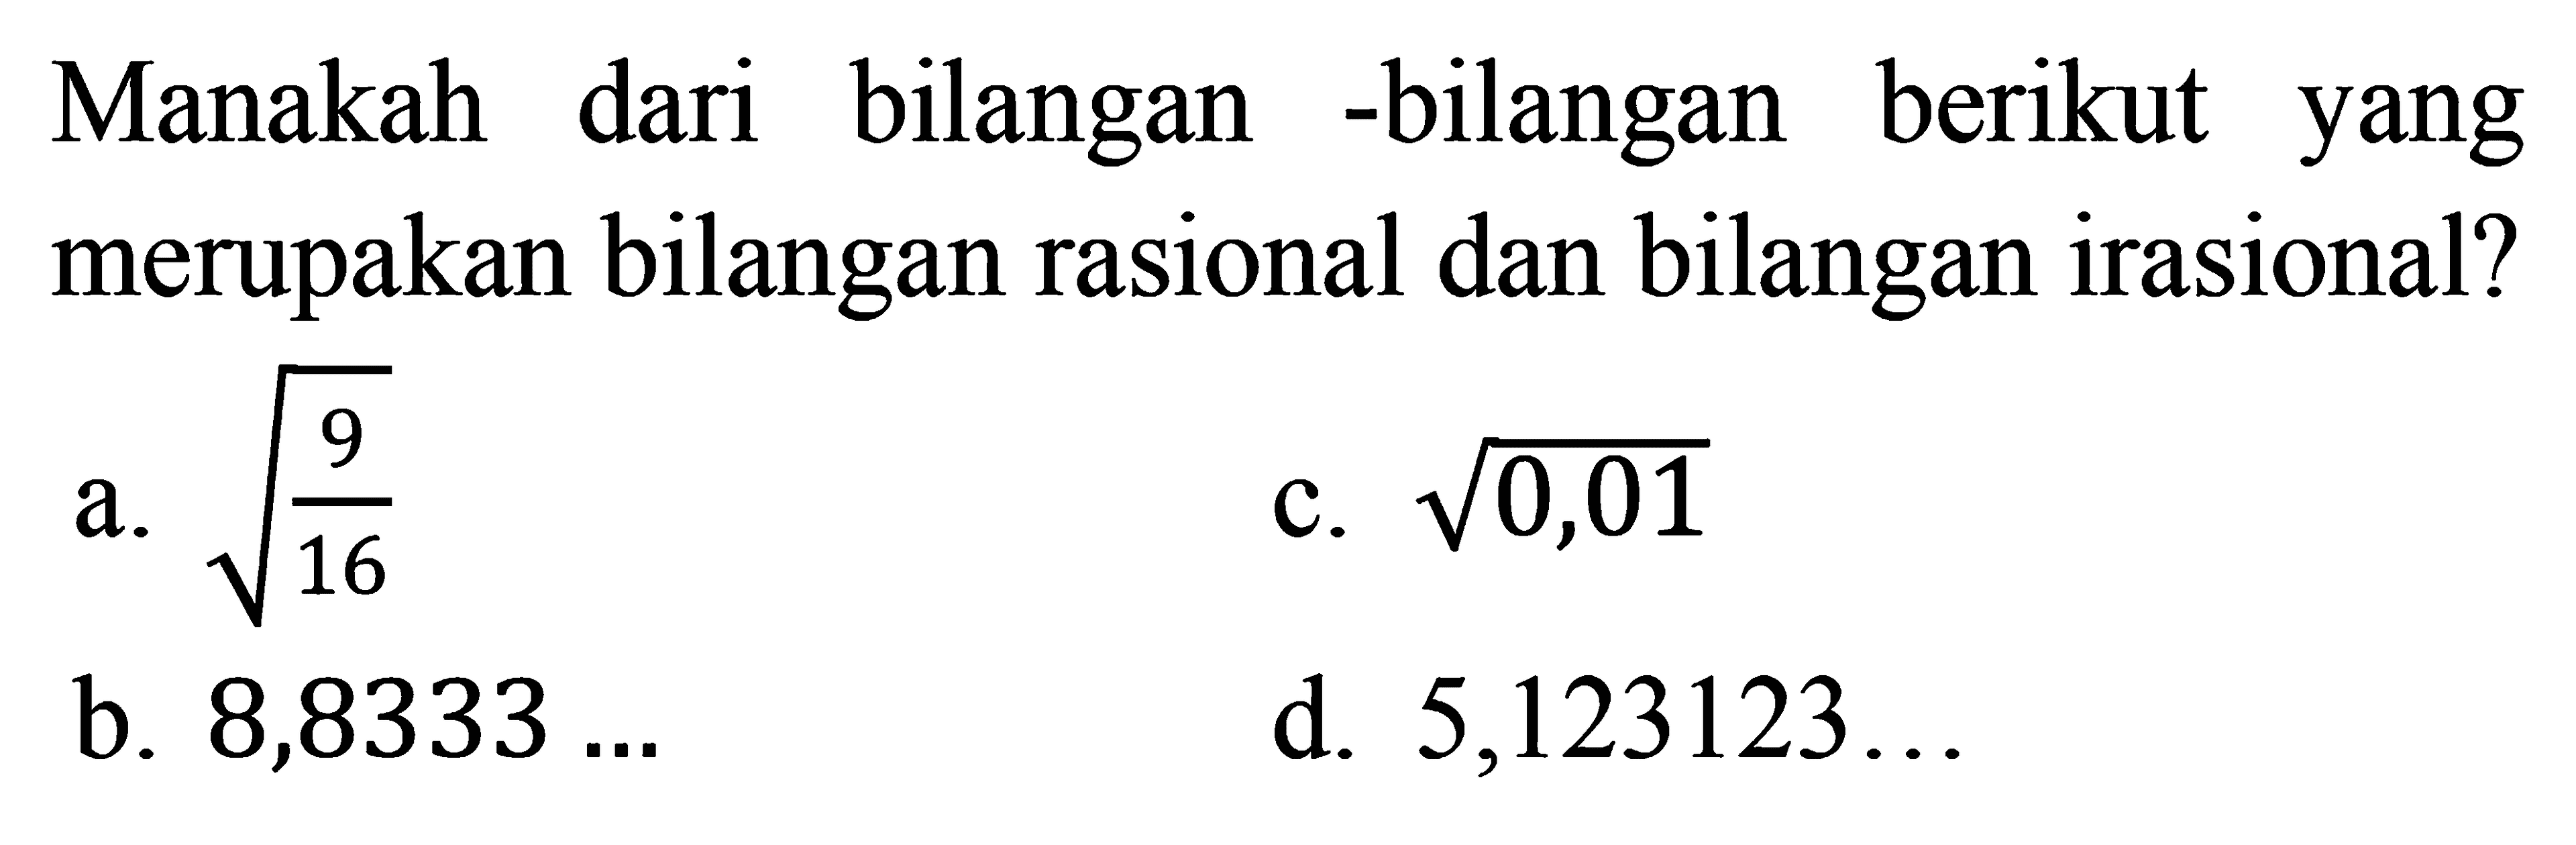 Manakah dari bilangan-bilangan berikut yang merupakan bilangan rasional dan bilangan irasional? a. akar(9/16) b. 8,8333... c. akar(0,01) d. 5,123123...